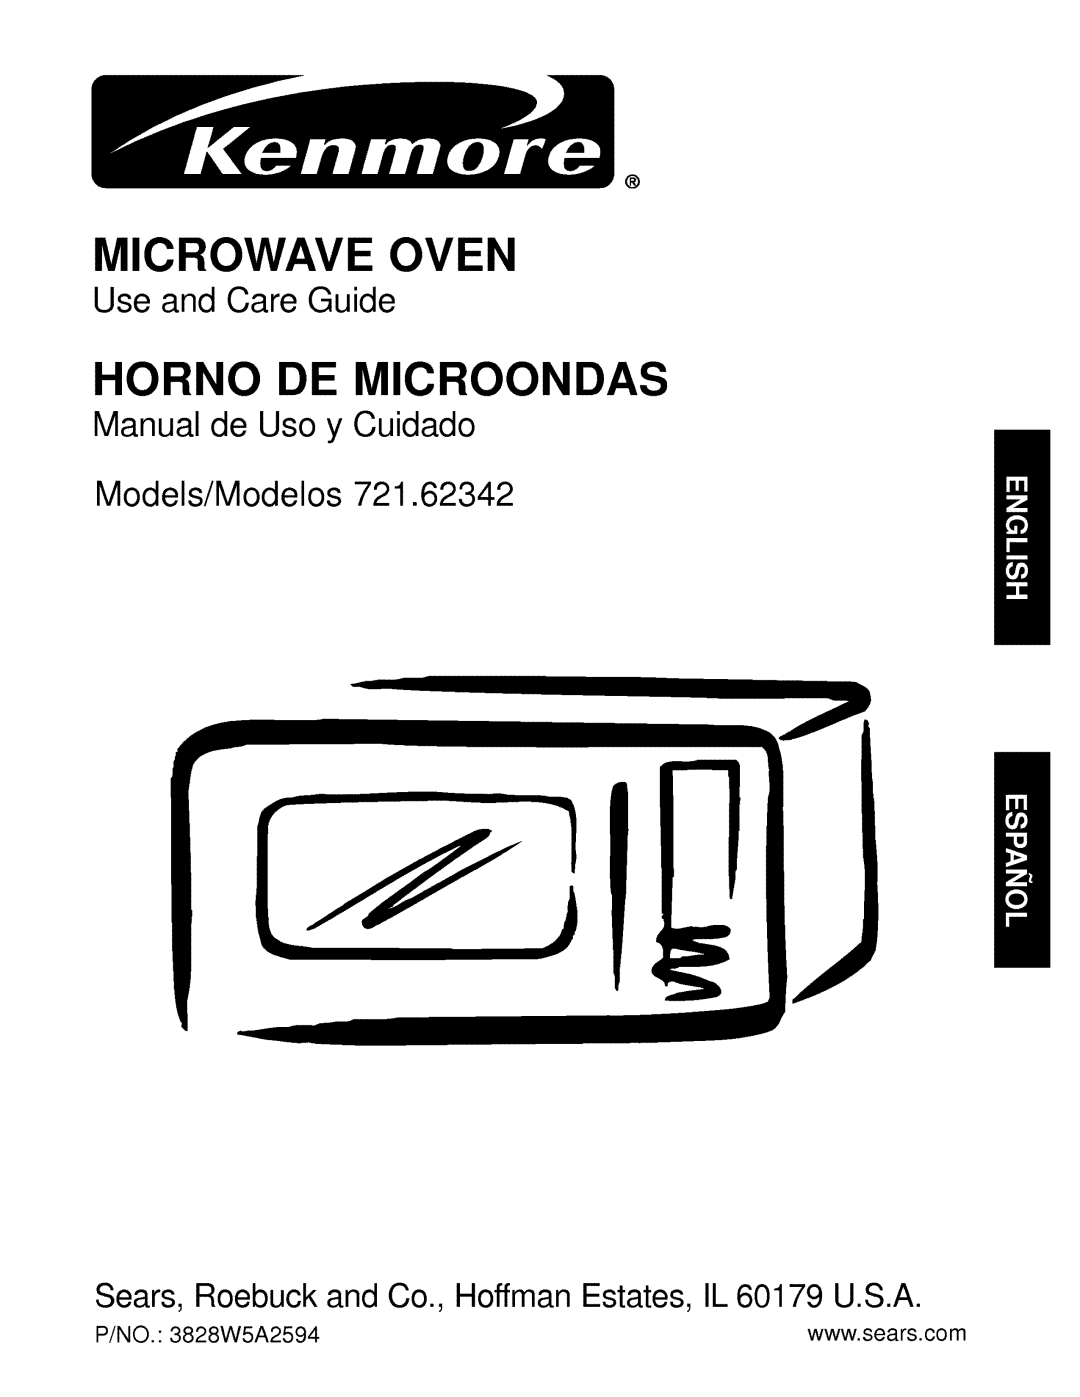 Kenmore 721.62342 manual Microwave Oven, Horno De Microondas, Use and Care Guide, Manual de Uso y Cuidado Models/Modelos 